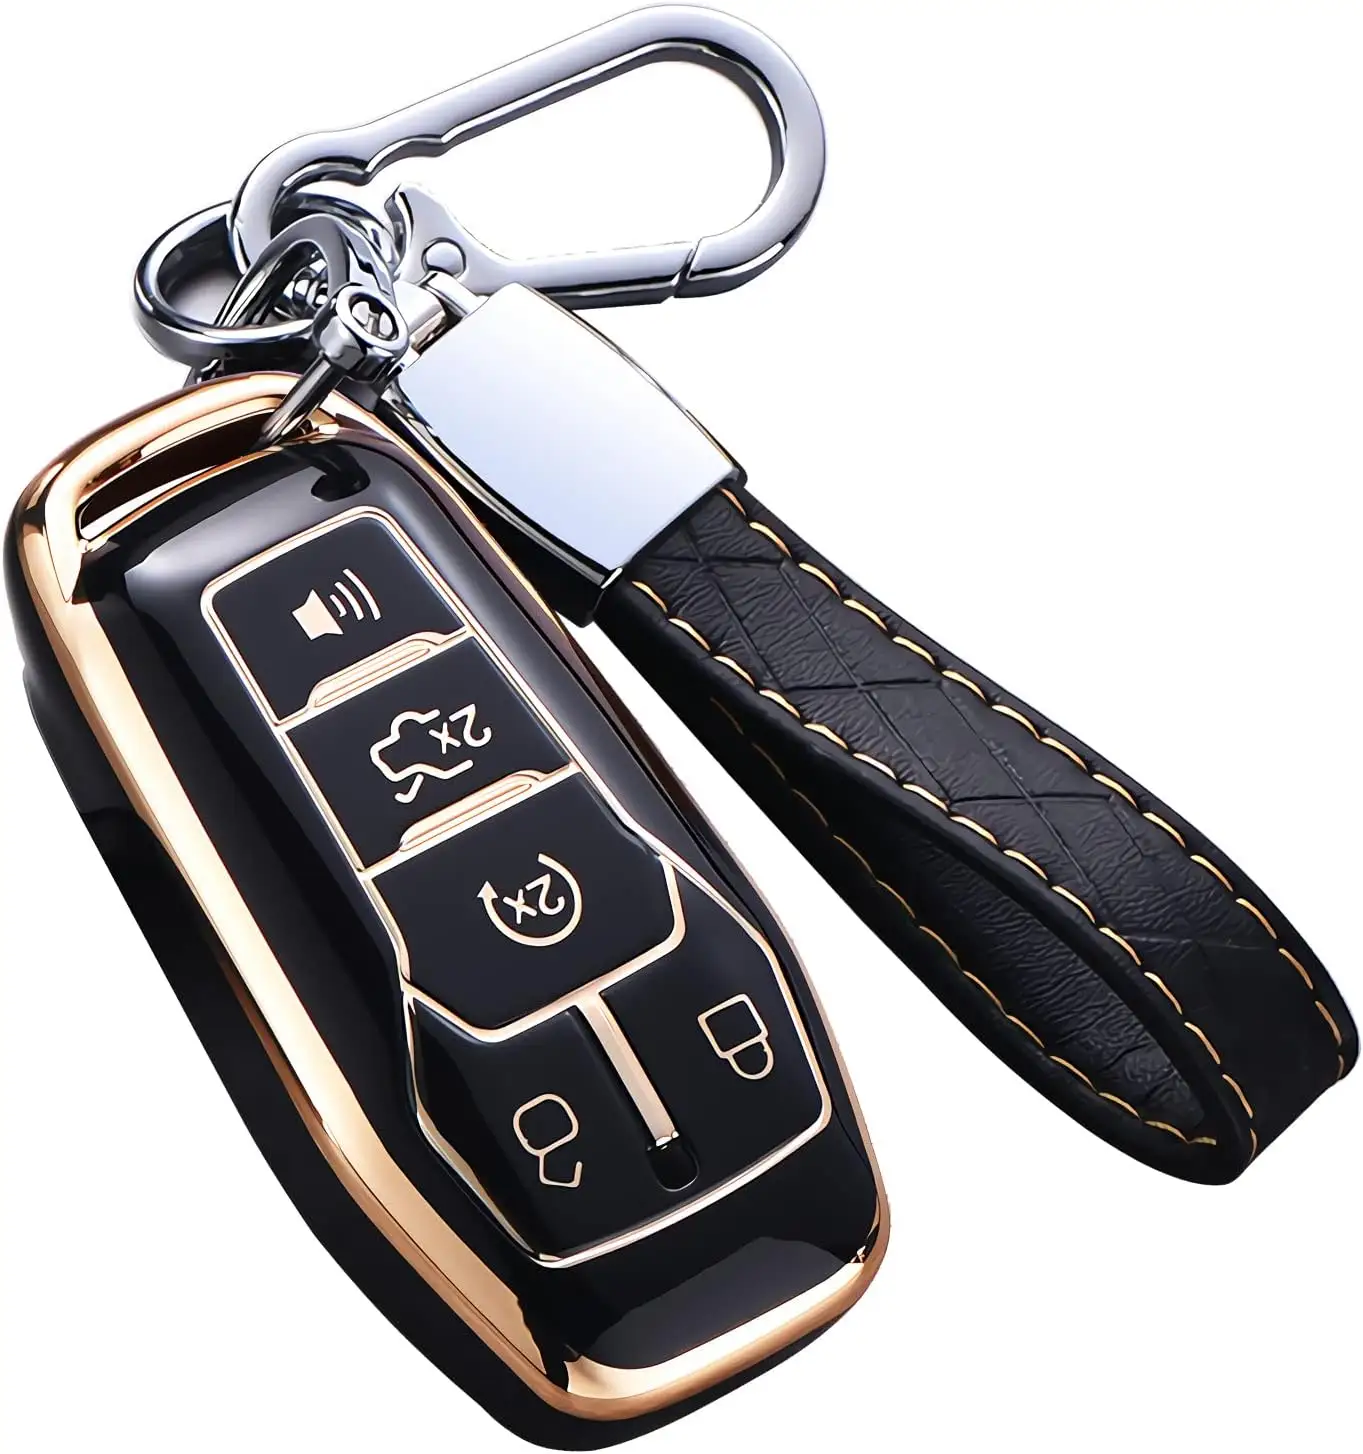 Ford anahtarlık kapağı için, Premium yumuşak TPU tam koruma anahtarlık kılıfı